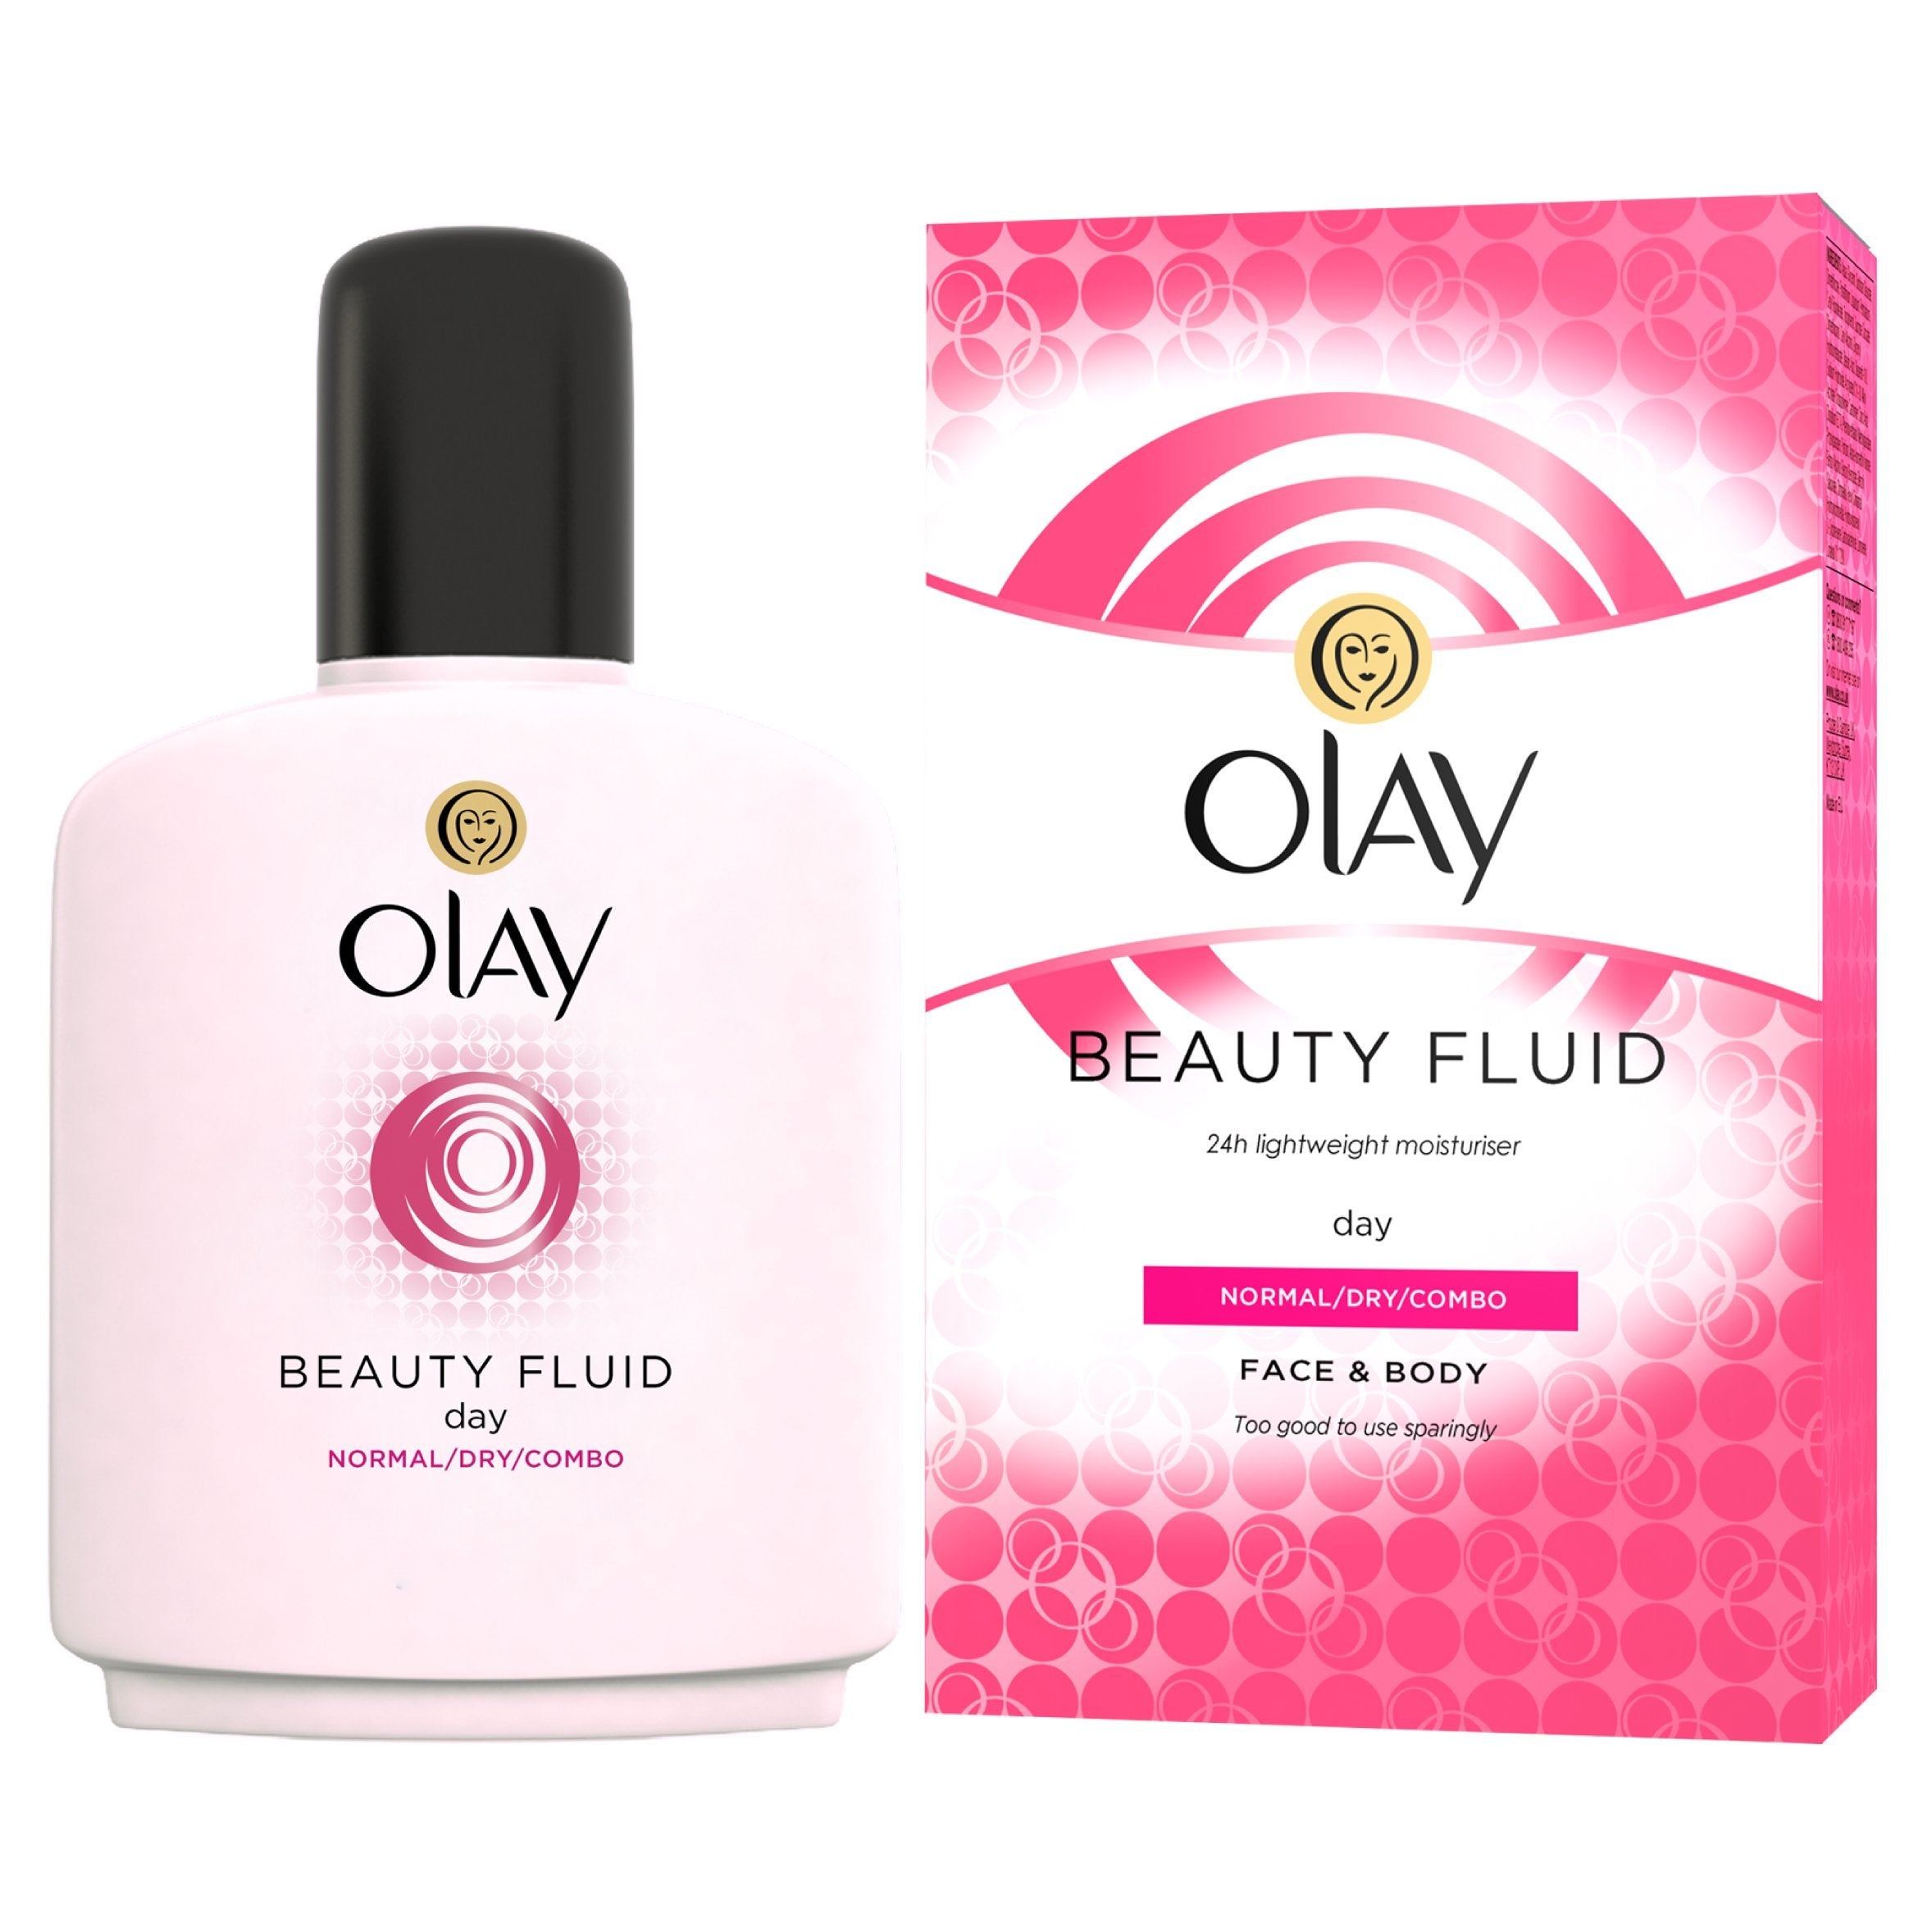 Olay Beauty Fluid Face and Body Moisturiser, 100ml